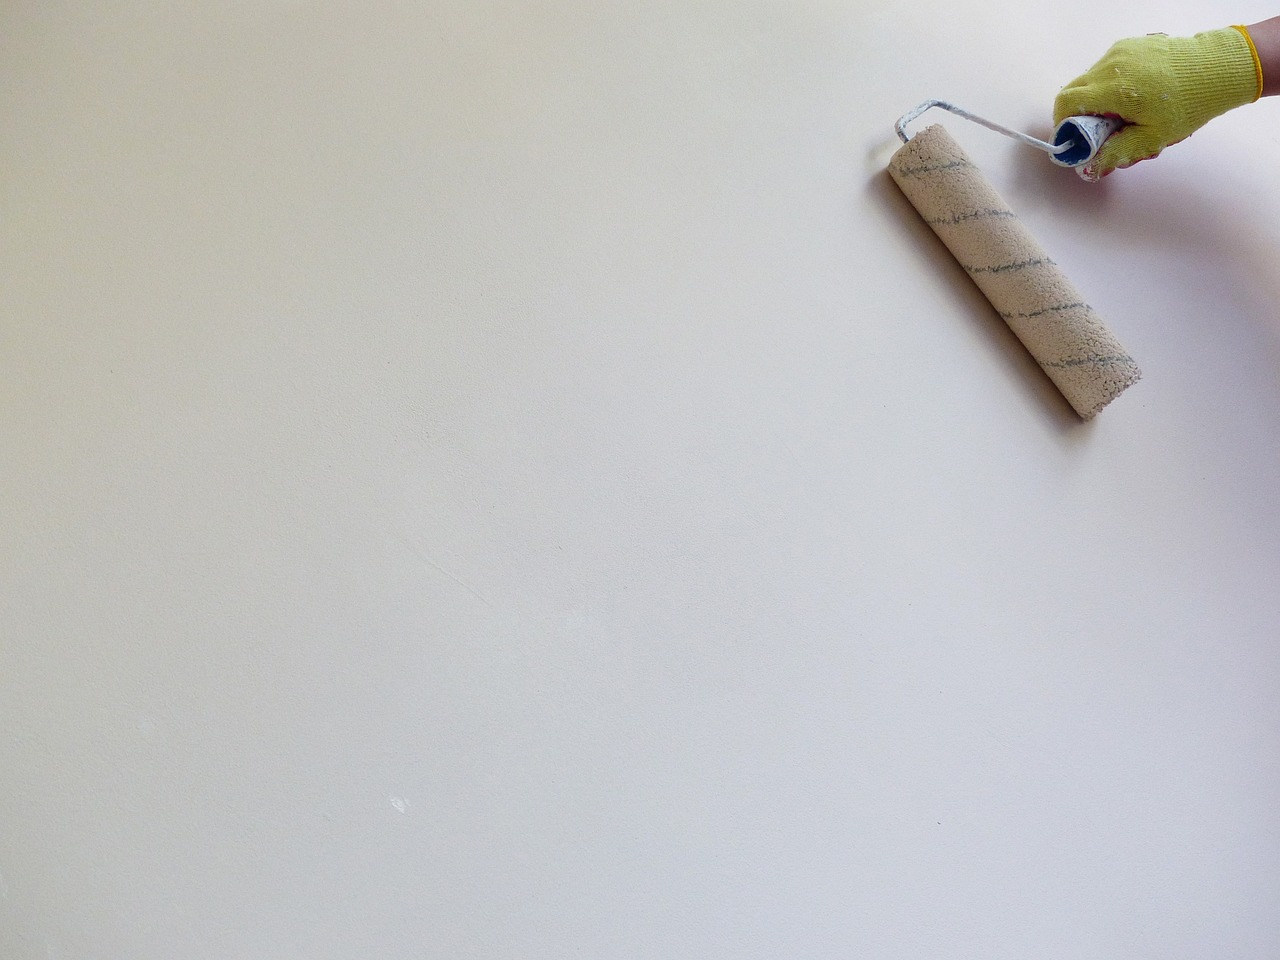 Comment rendre une peinture plus épaisse : Les astuces pour obtenir une peinture plus couvrante